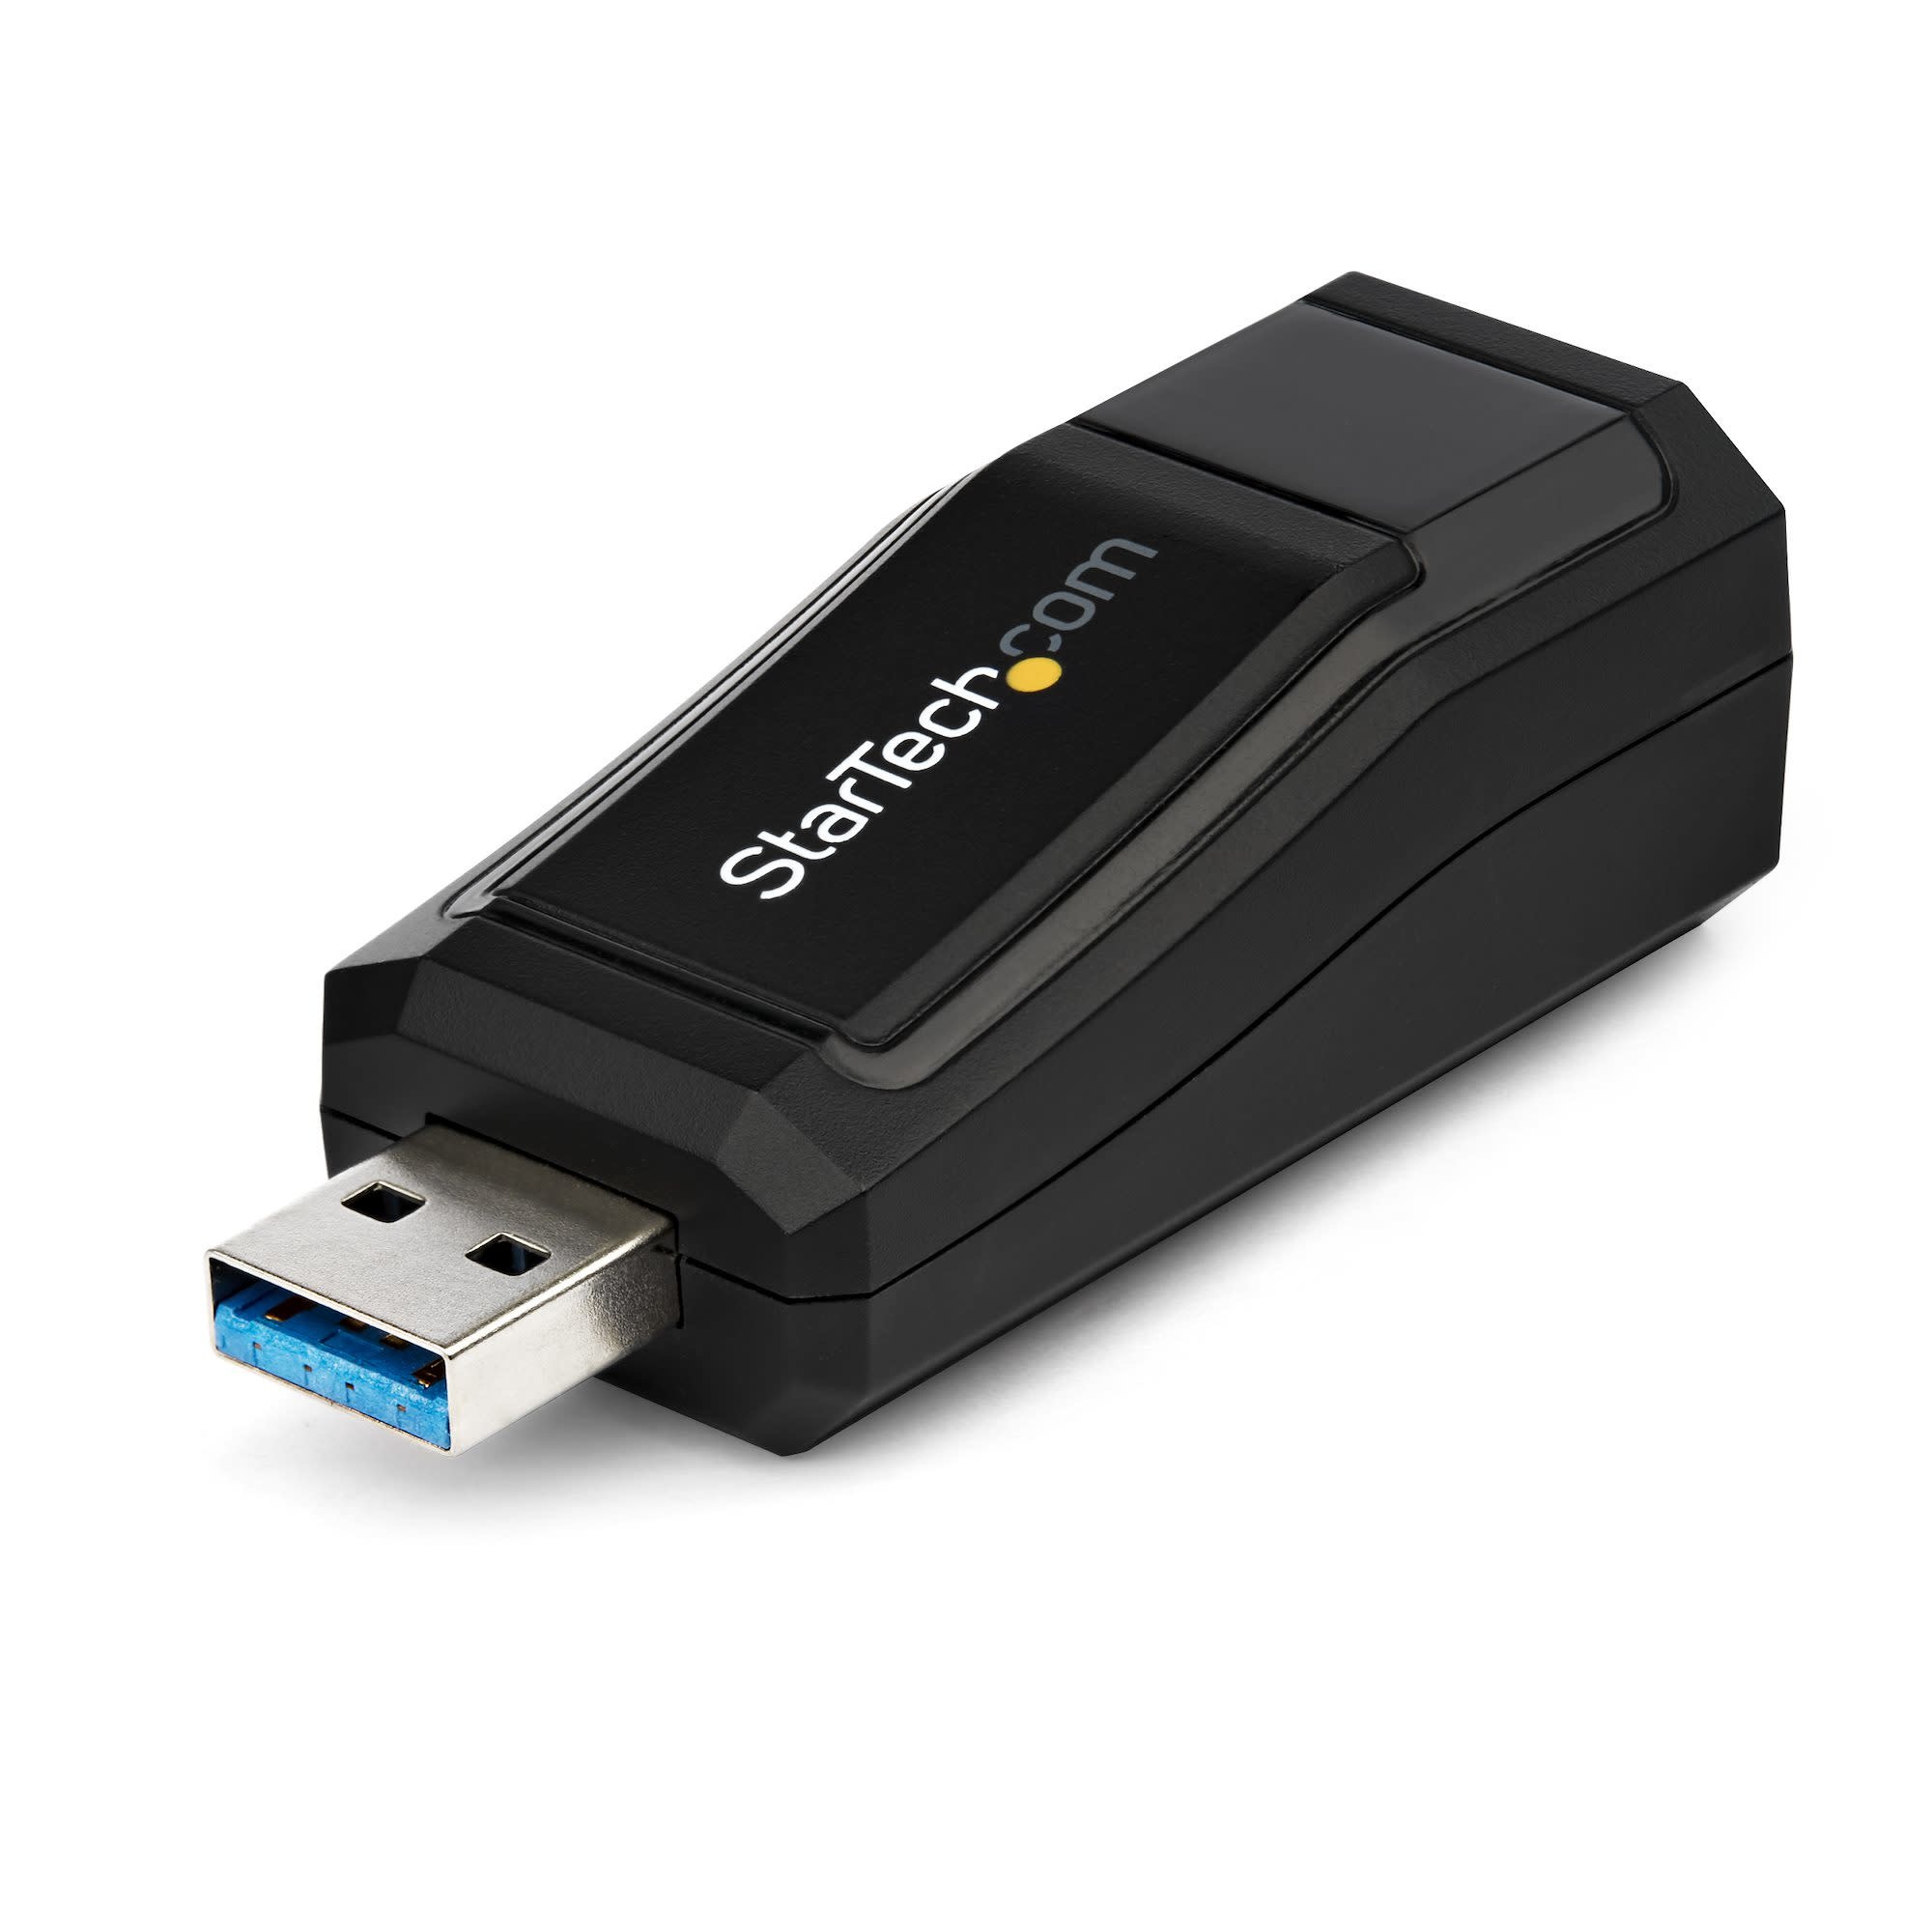 Startech.com StarTech.com USB 3.0 to Gigabit Ethernet Network Adapter - 10/100/1000 Mbps - Rutgers Tech Store